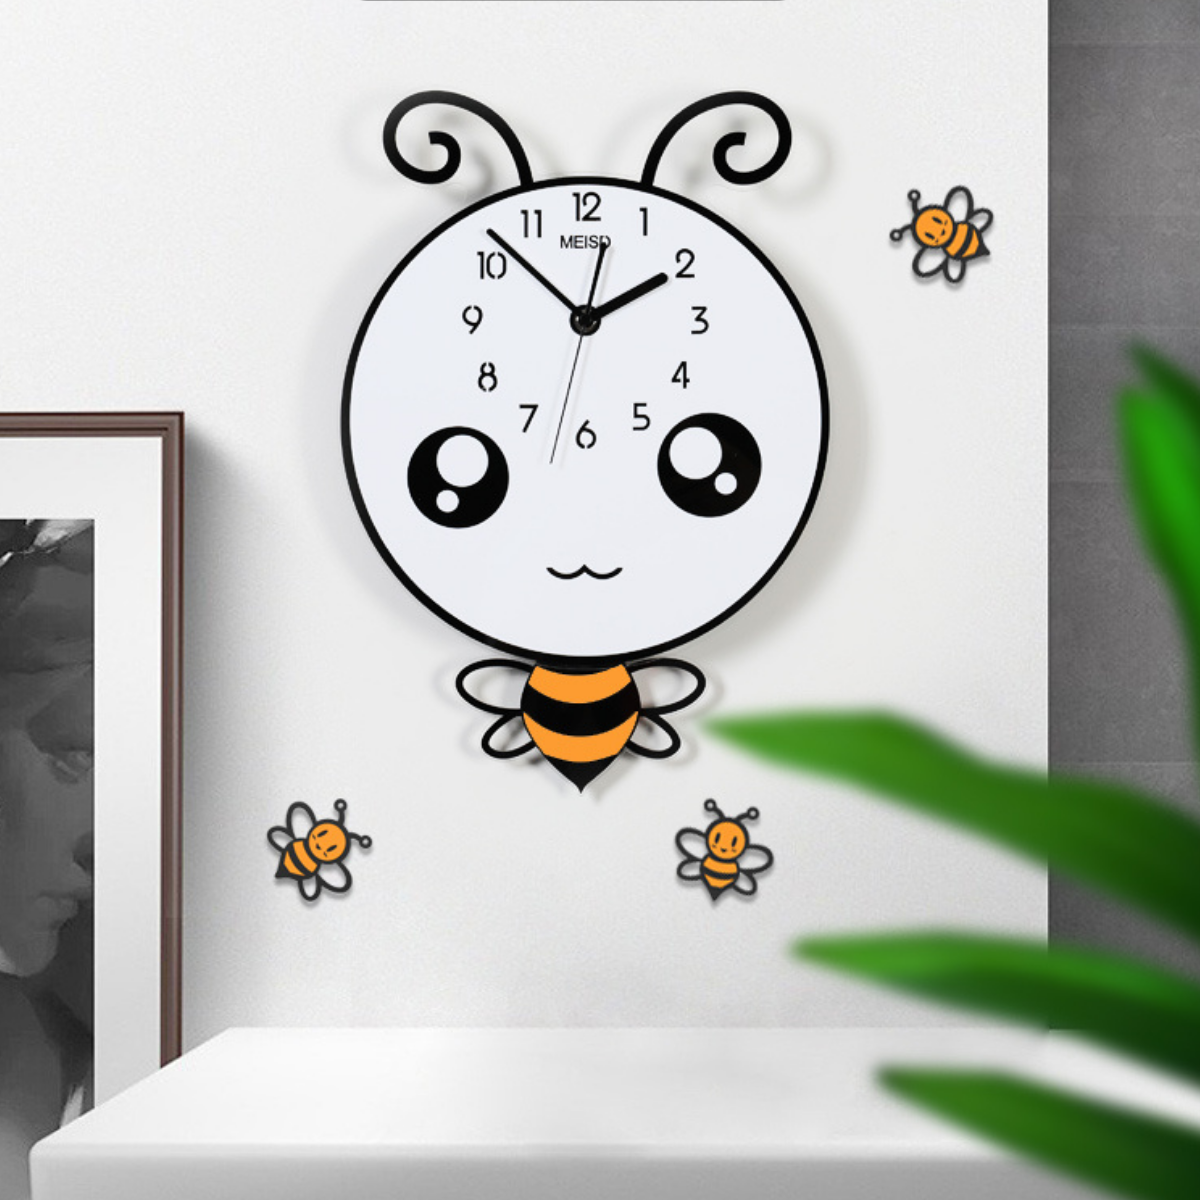 Đồng hồ trang trí hoạt hình dễ thương - KHÔNG CẦN KHOAN TƯỜNG - Tặng kèm 3 con ong nhỏ như hình